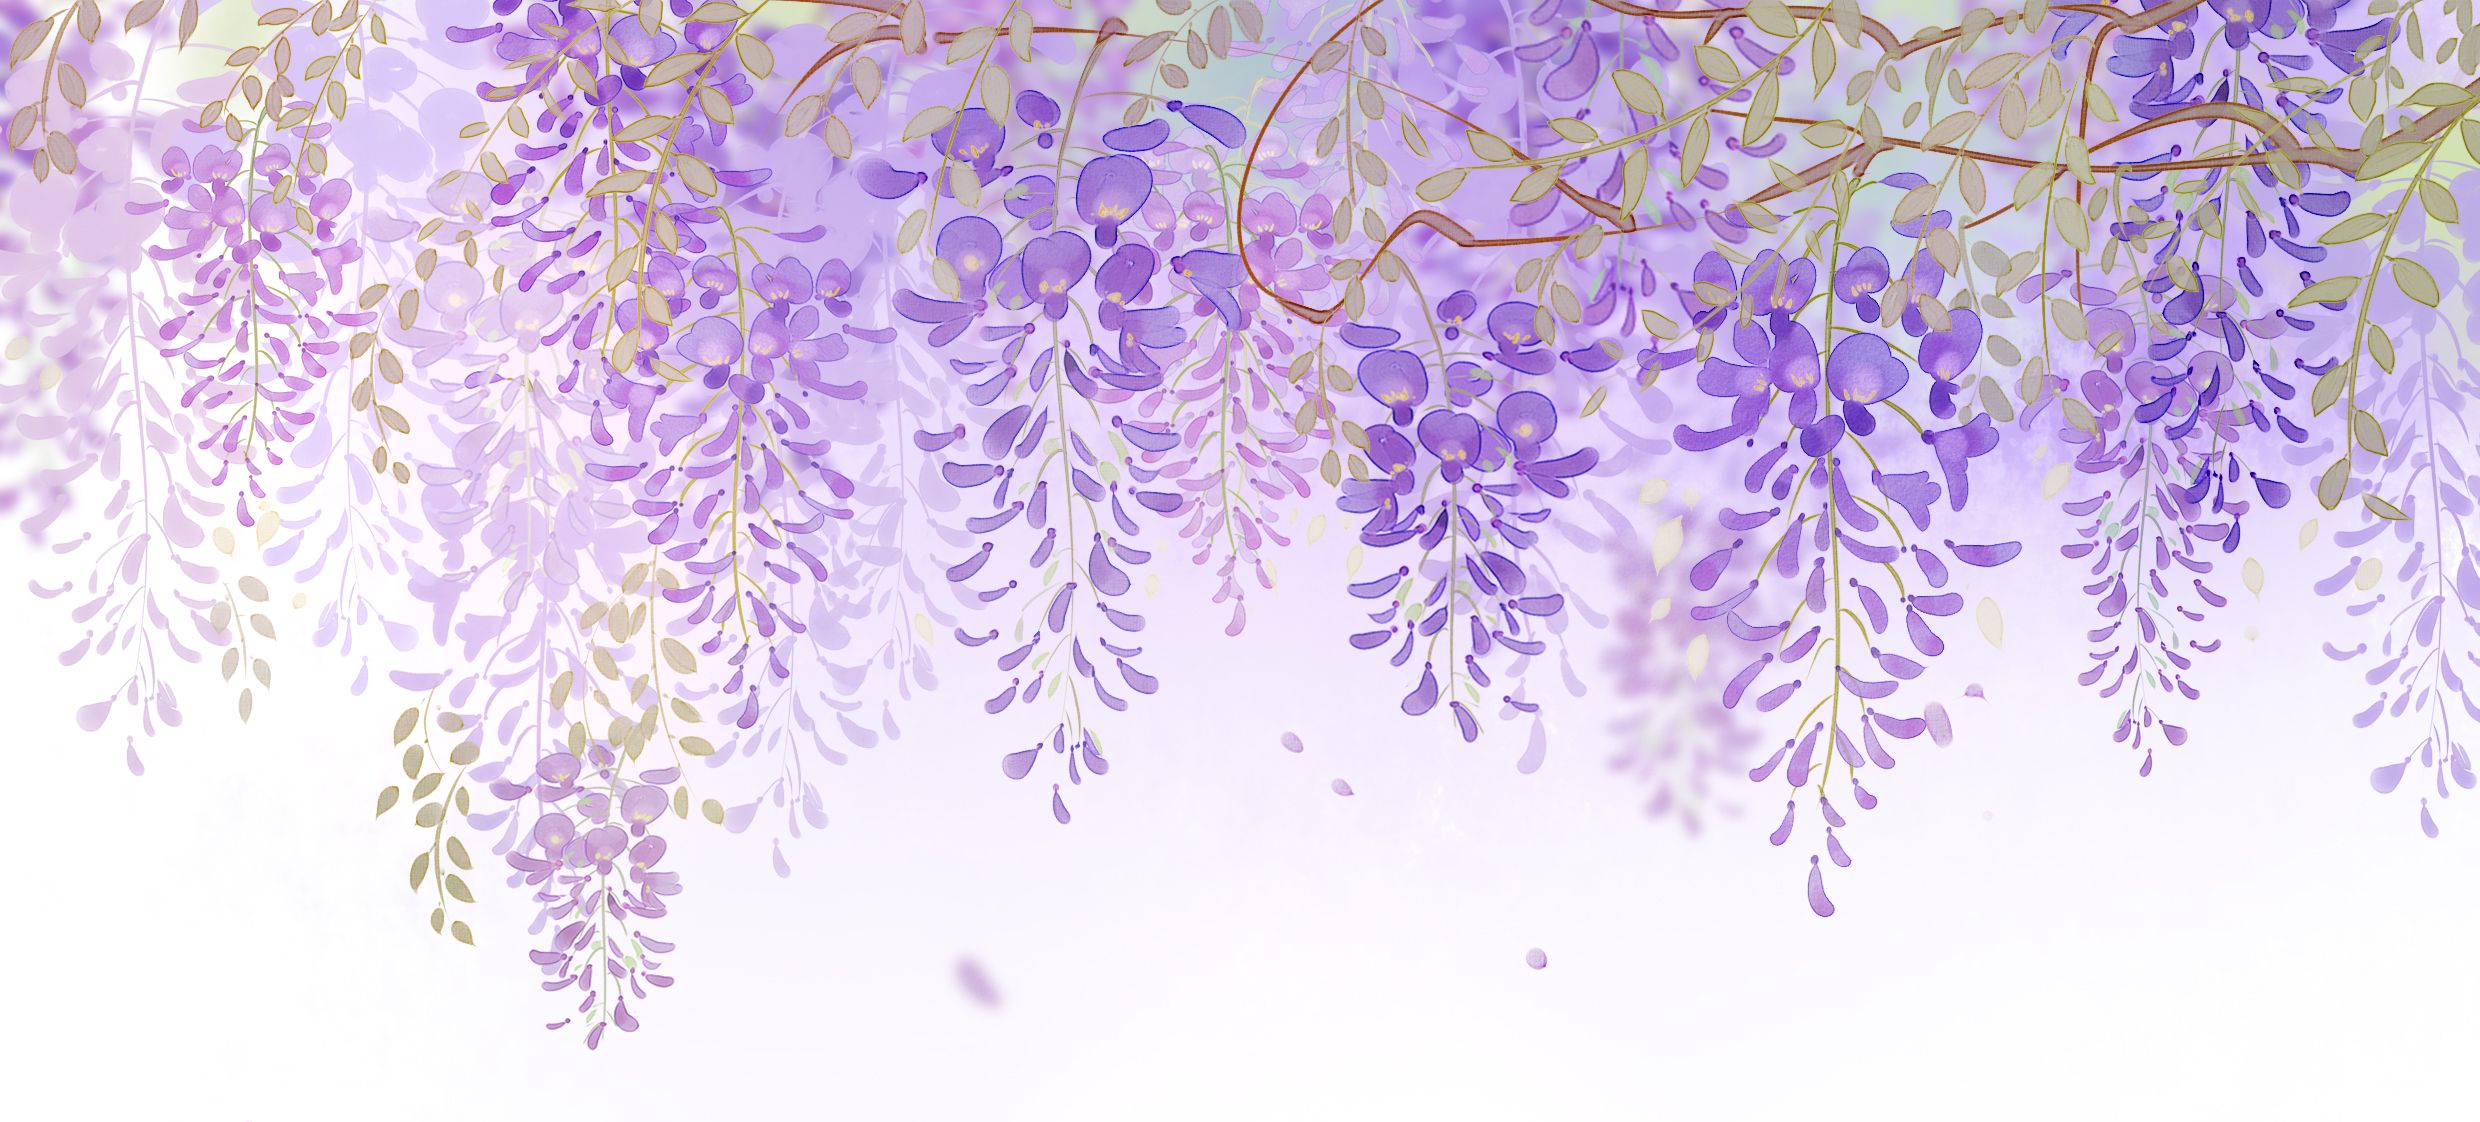 紫藤花唯美意境壁纸,高清图片,电脑桌面-壁纸族